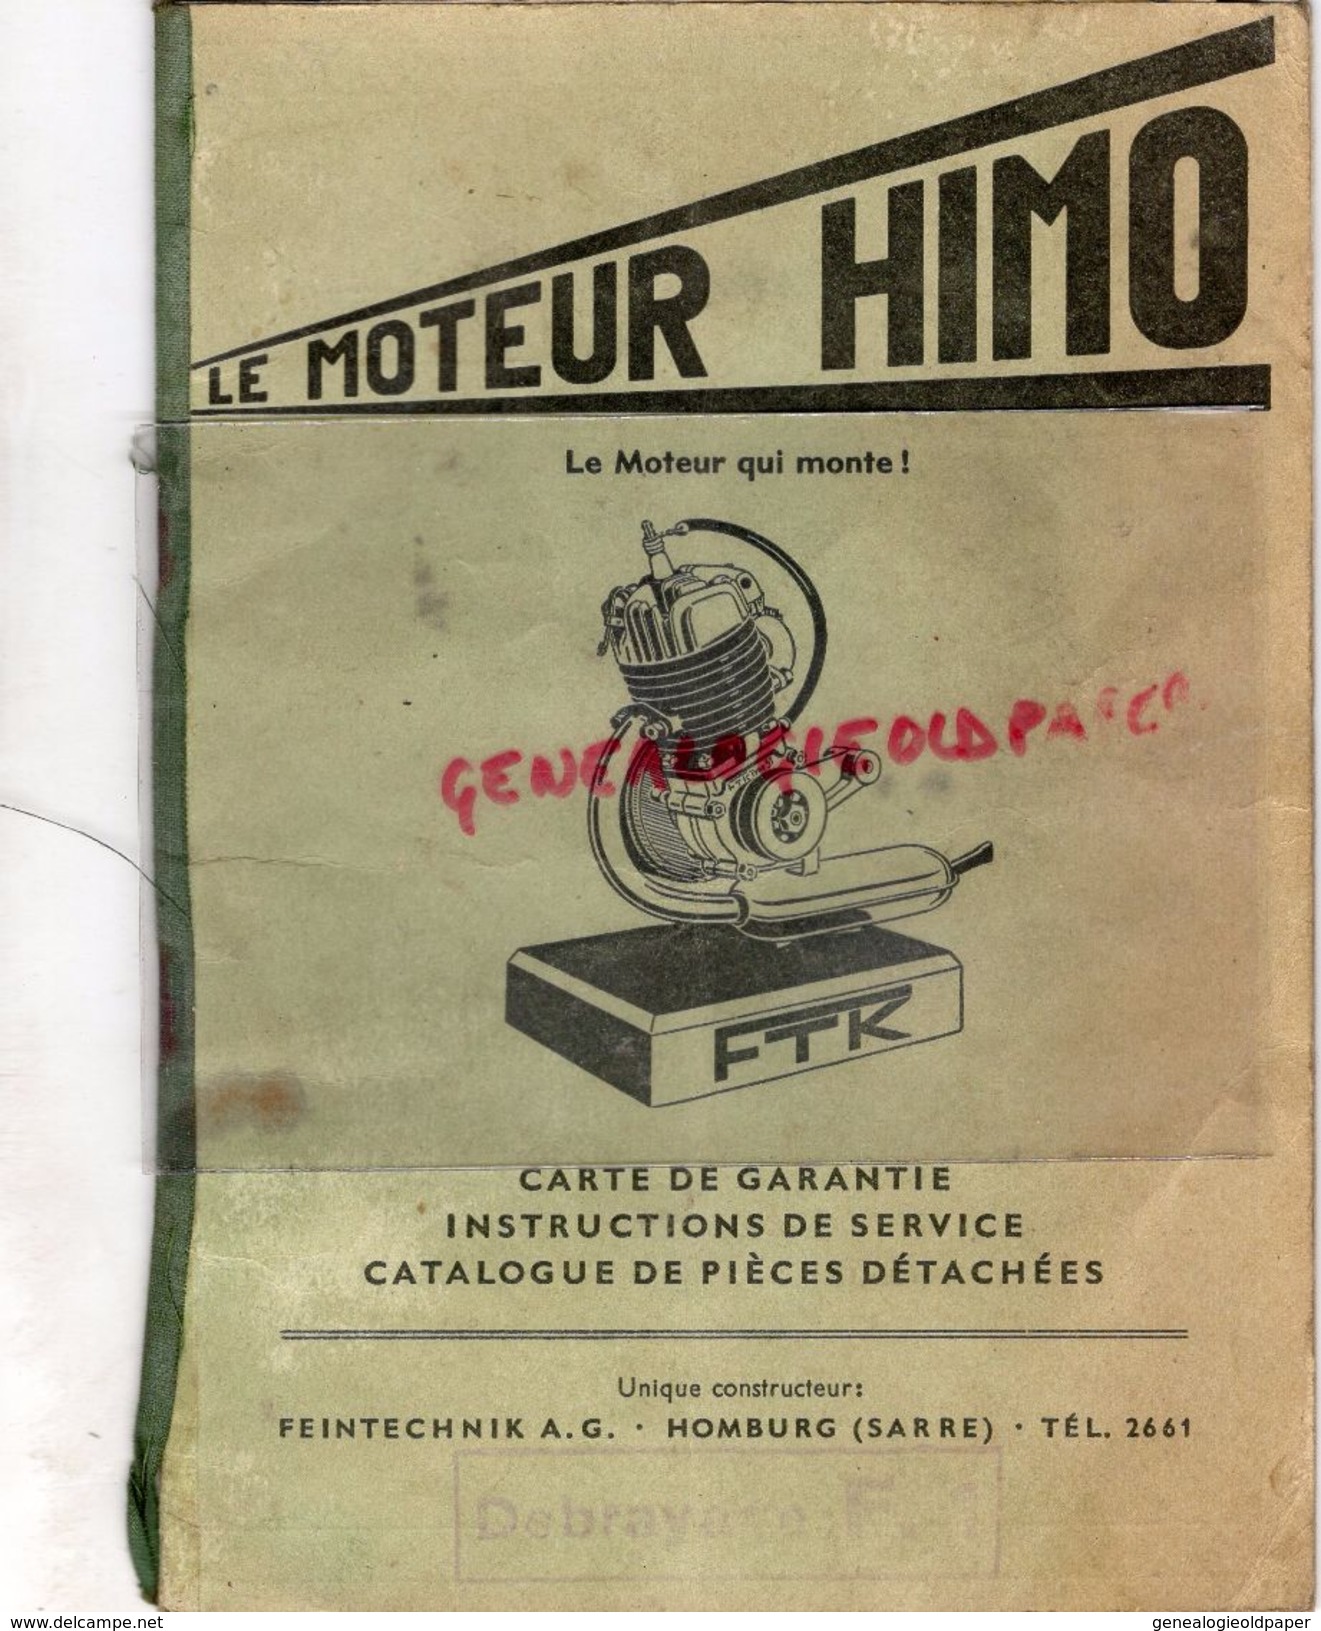 ALLEMAGNE- LE MOTEUR HIMO TYPE 51- FTK- FEINTECHNIK A.G. HOMBURG-SARRE- 1953- - Automobil